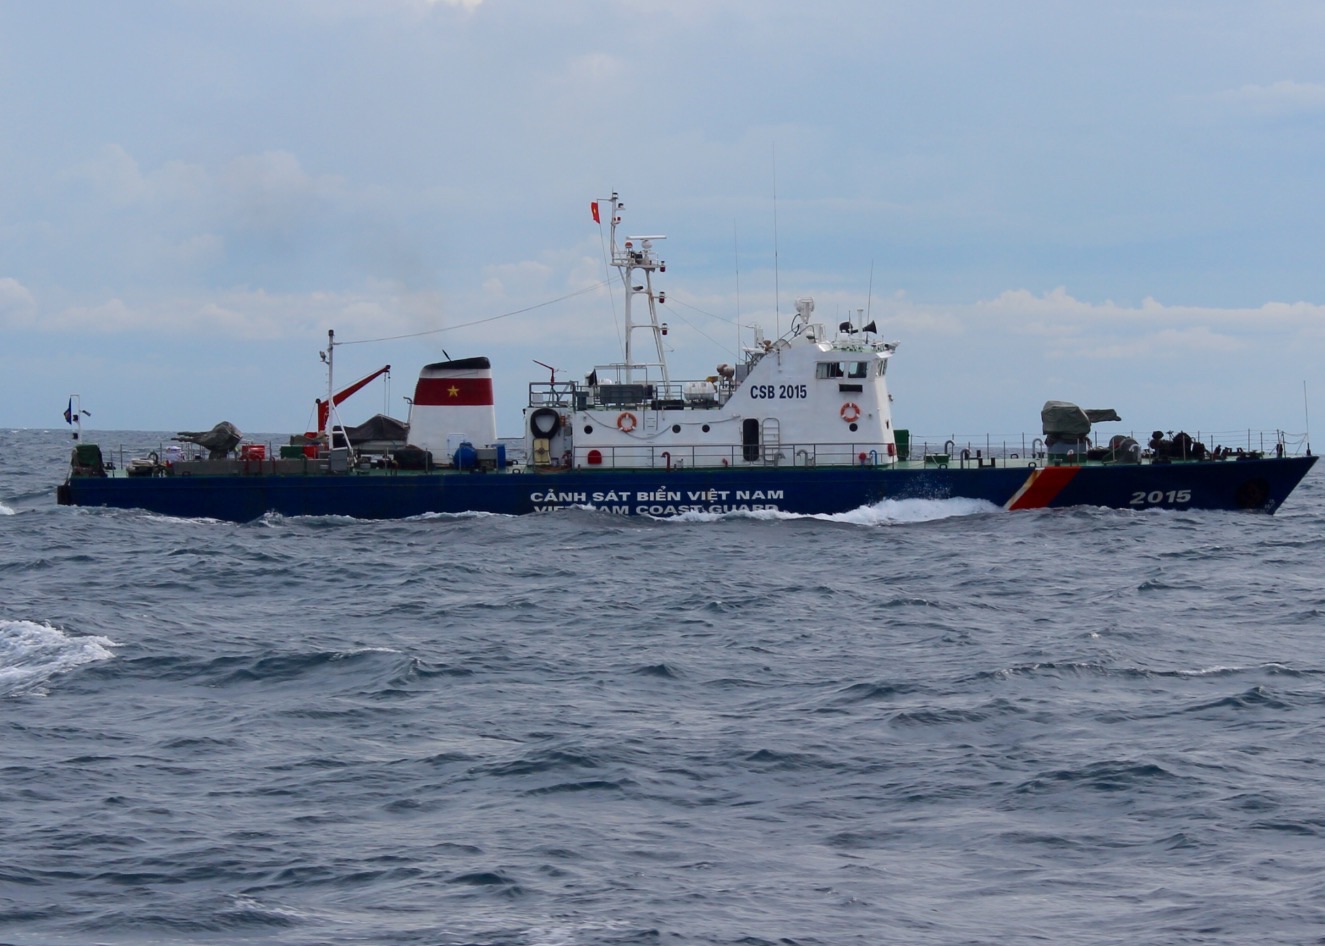 Tàu CBS 2015 trên hành trình đi cứu nạn tàu Hoa Mai 25 (ảnh do Bộ Tư lệnh Vùng CSB 2 cung cấp)